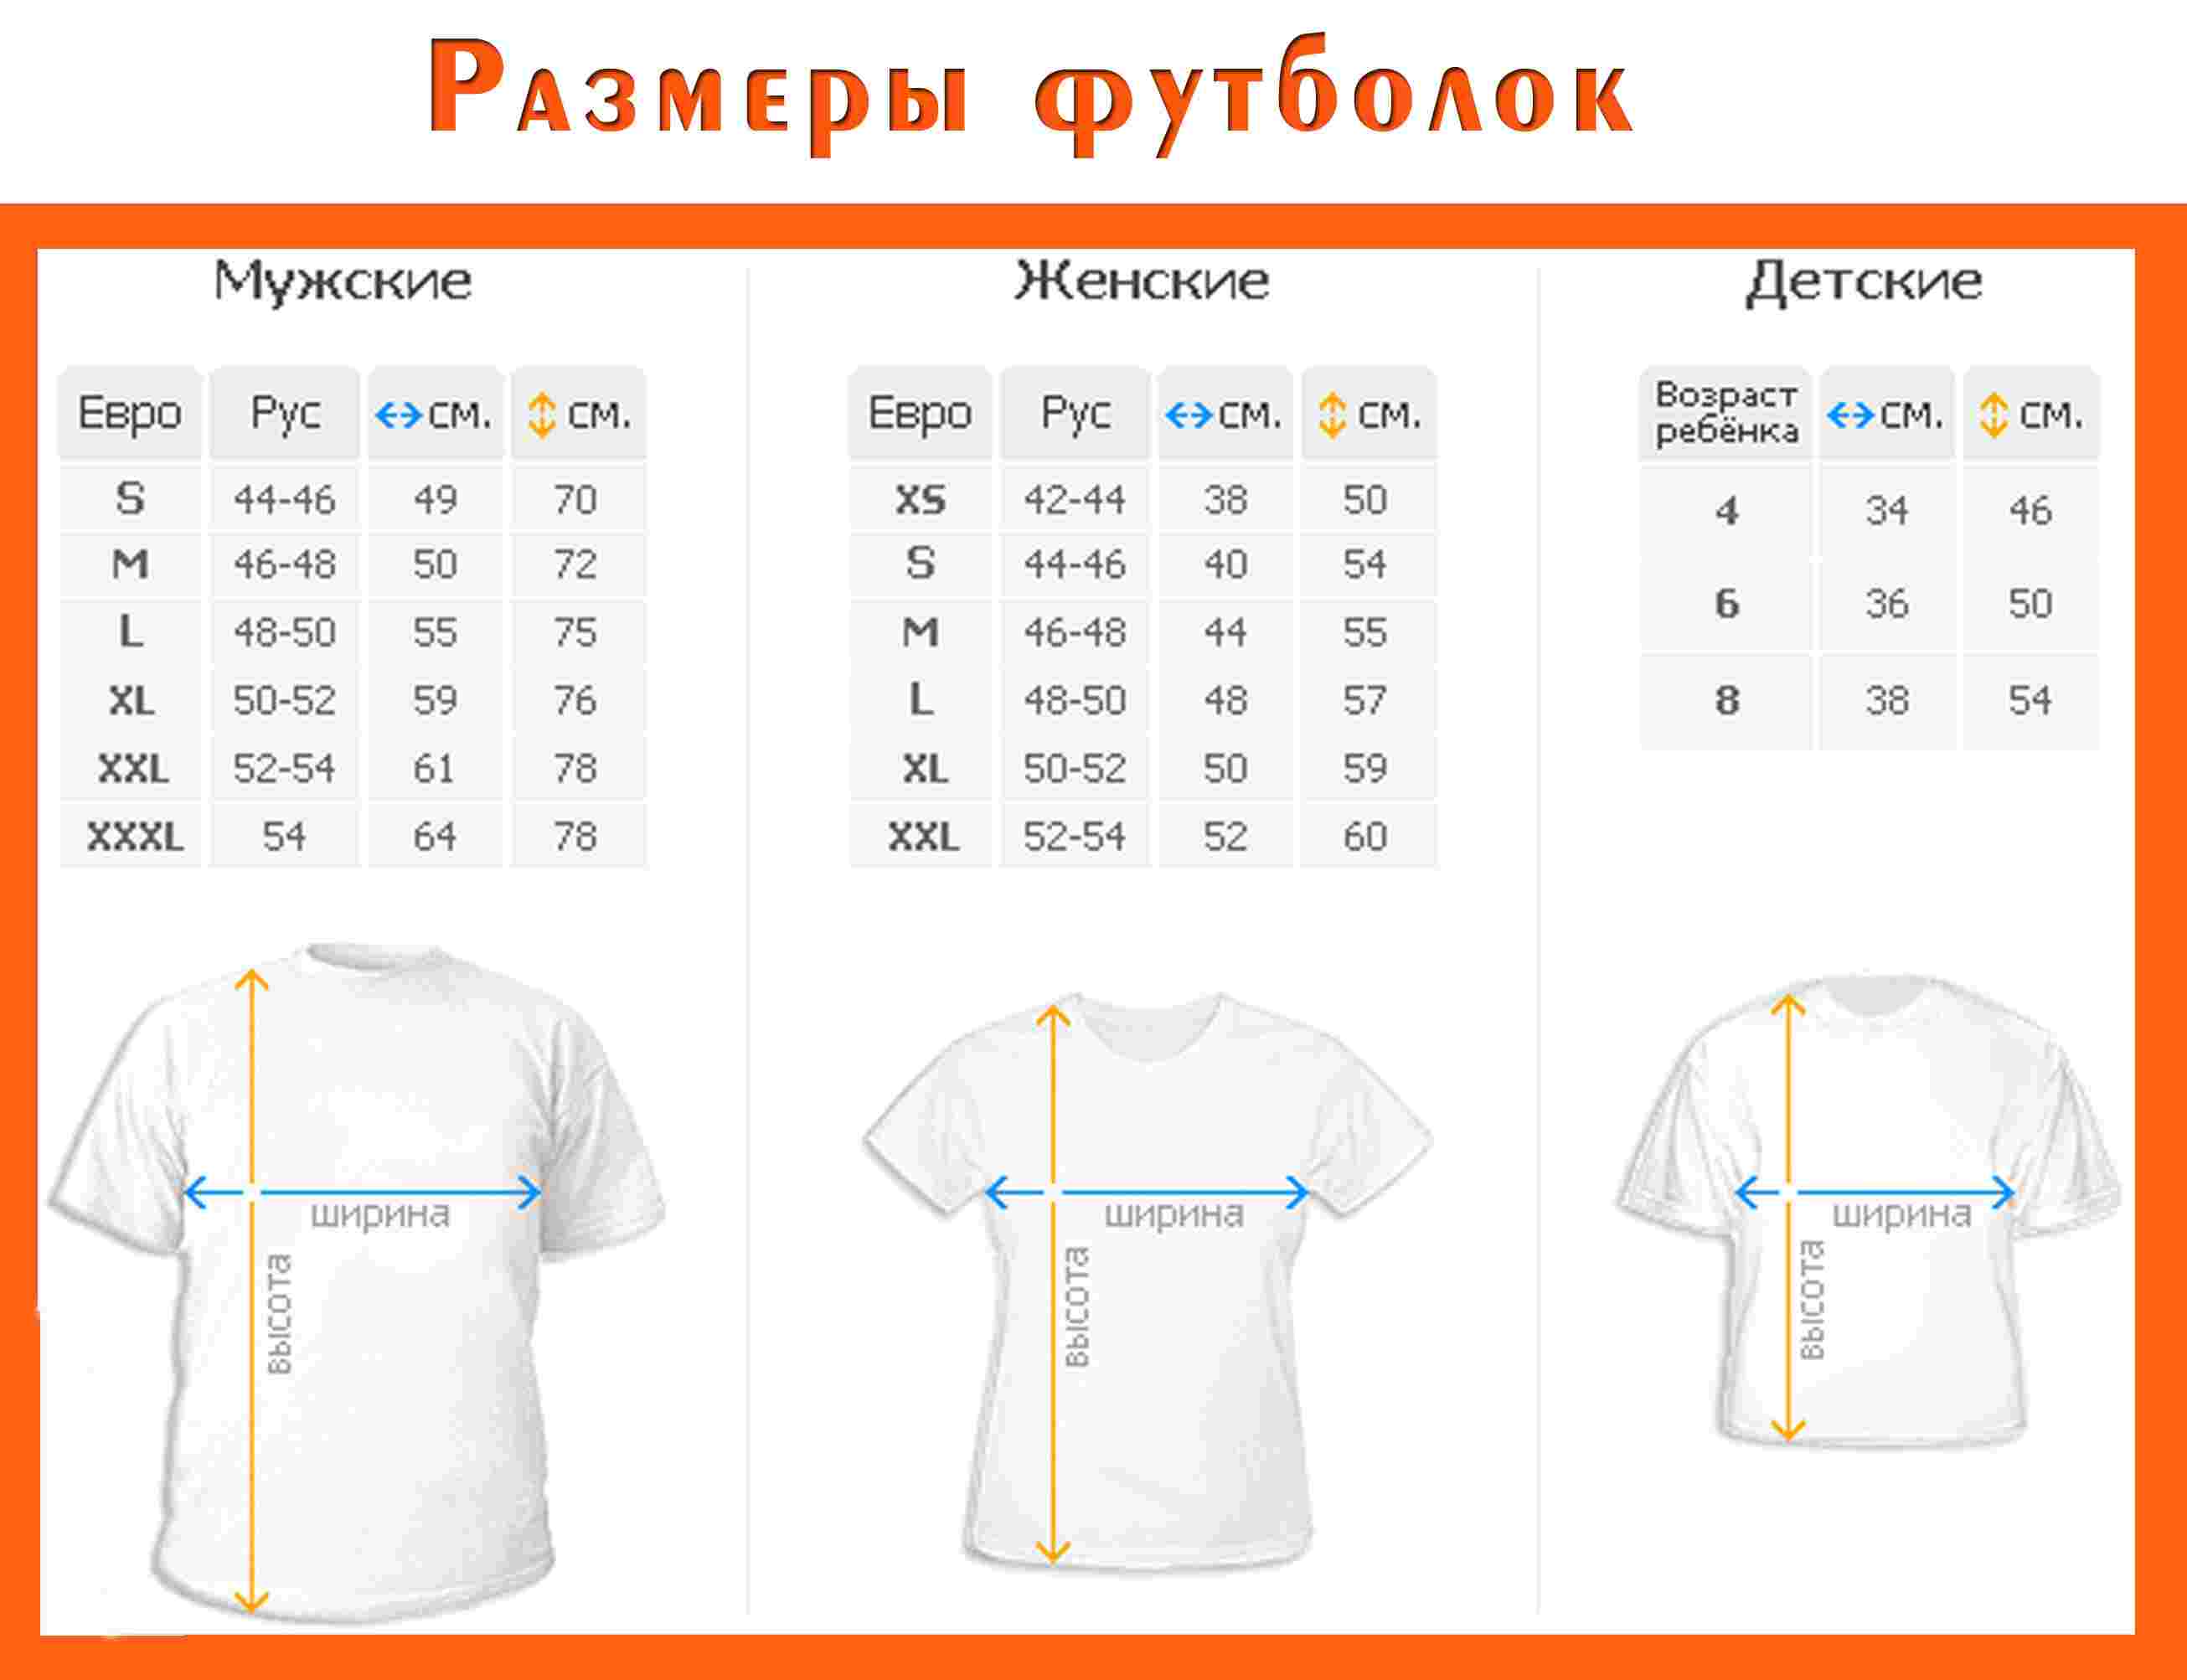 Как подобрать размер мужской футболки? :: syl.ru